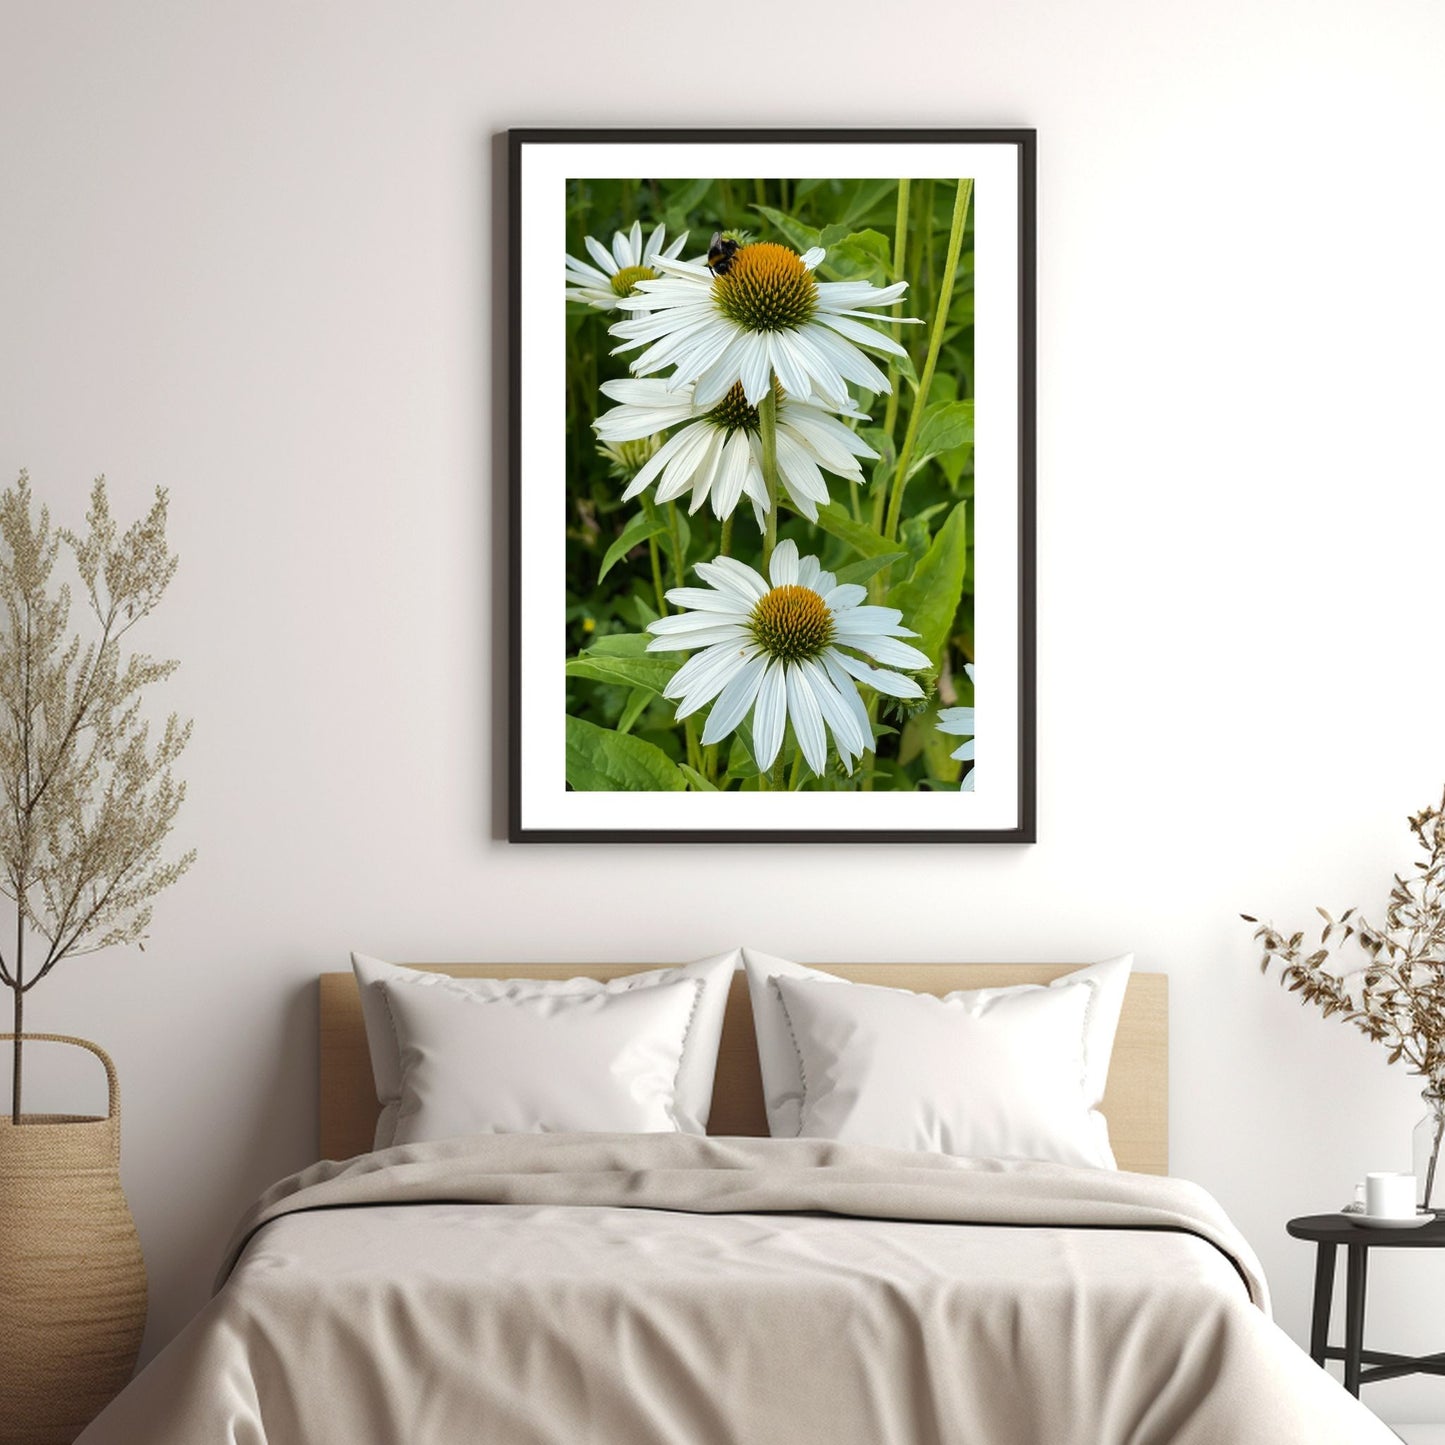 Eng med hvit solhatt i full blomstring. En bie sitter på den ene blomsten. Motivet er dekorativt både som plakat og på lerret. Miljøbildet viser motivet i sort ramme hengende over en seng.